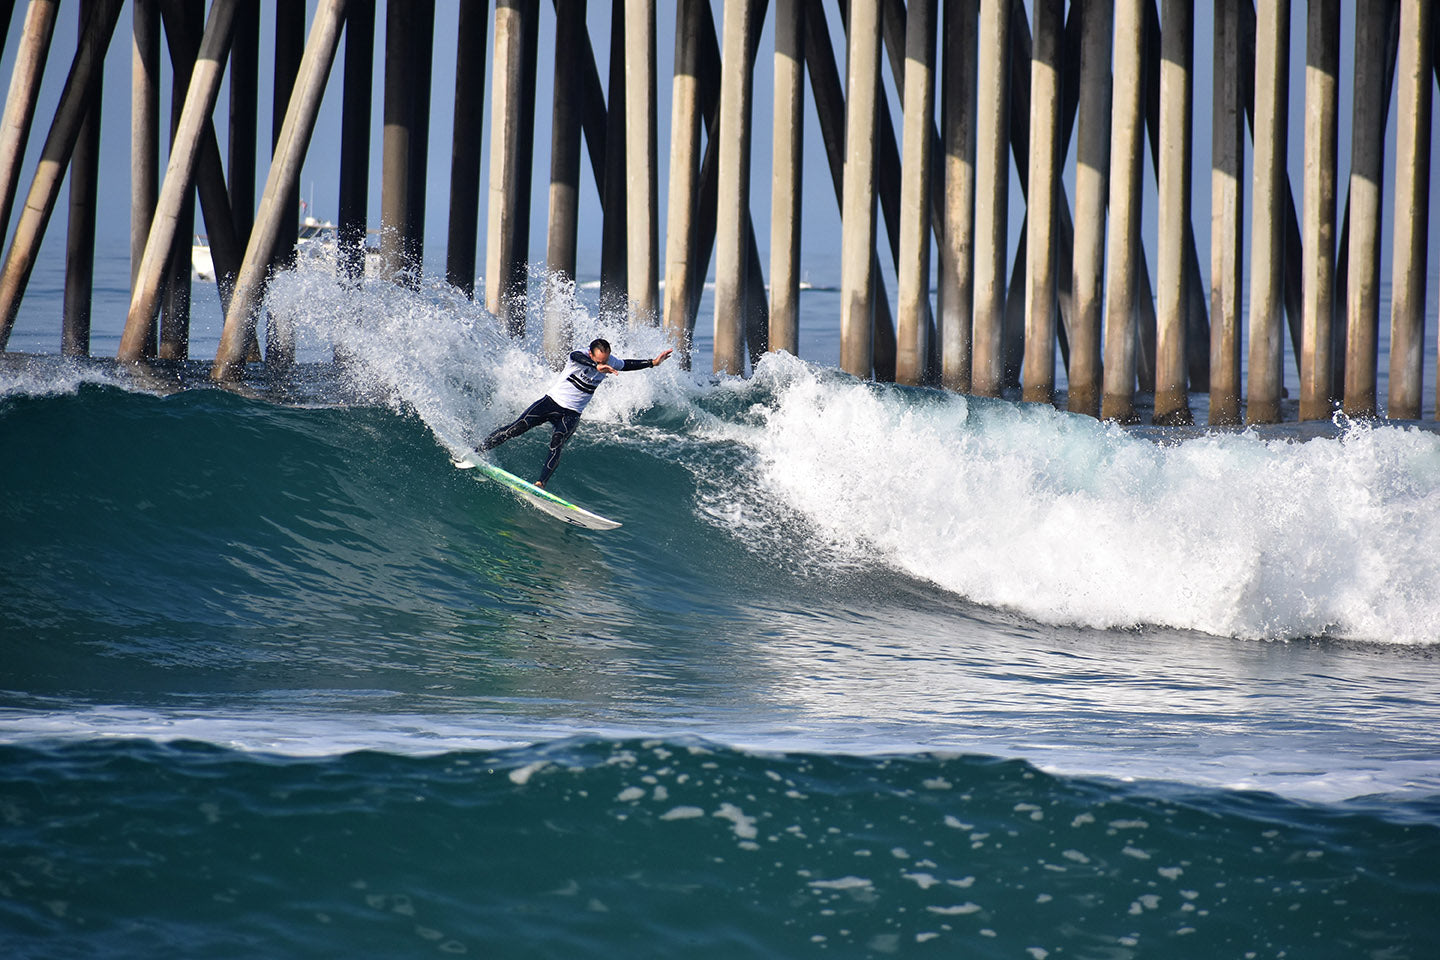 Brett Jordan surfing off Huntington Pier